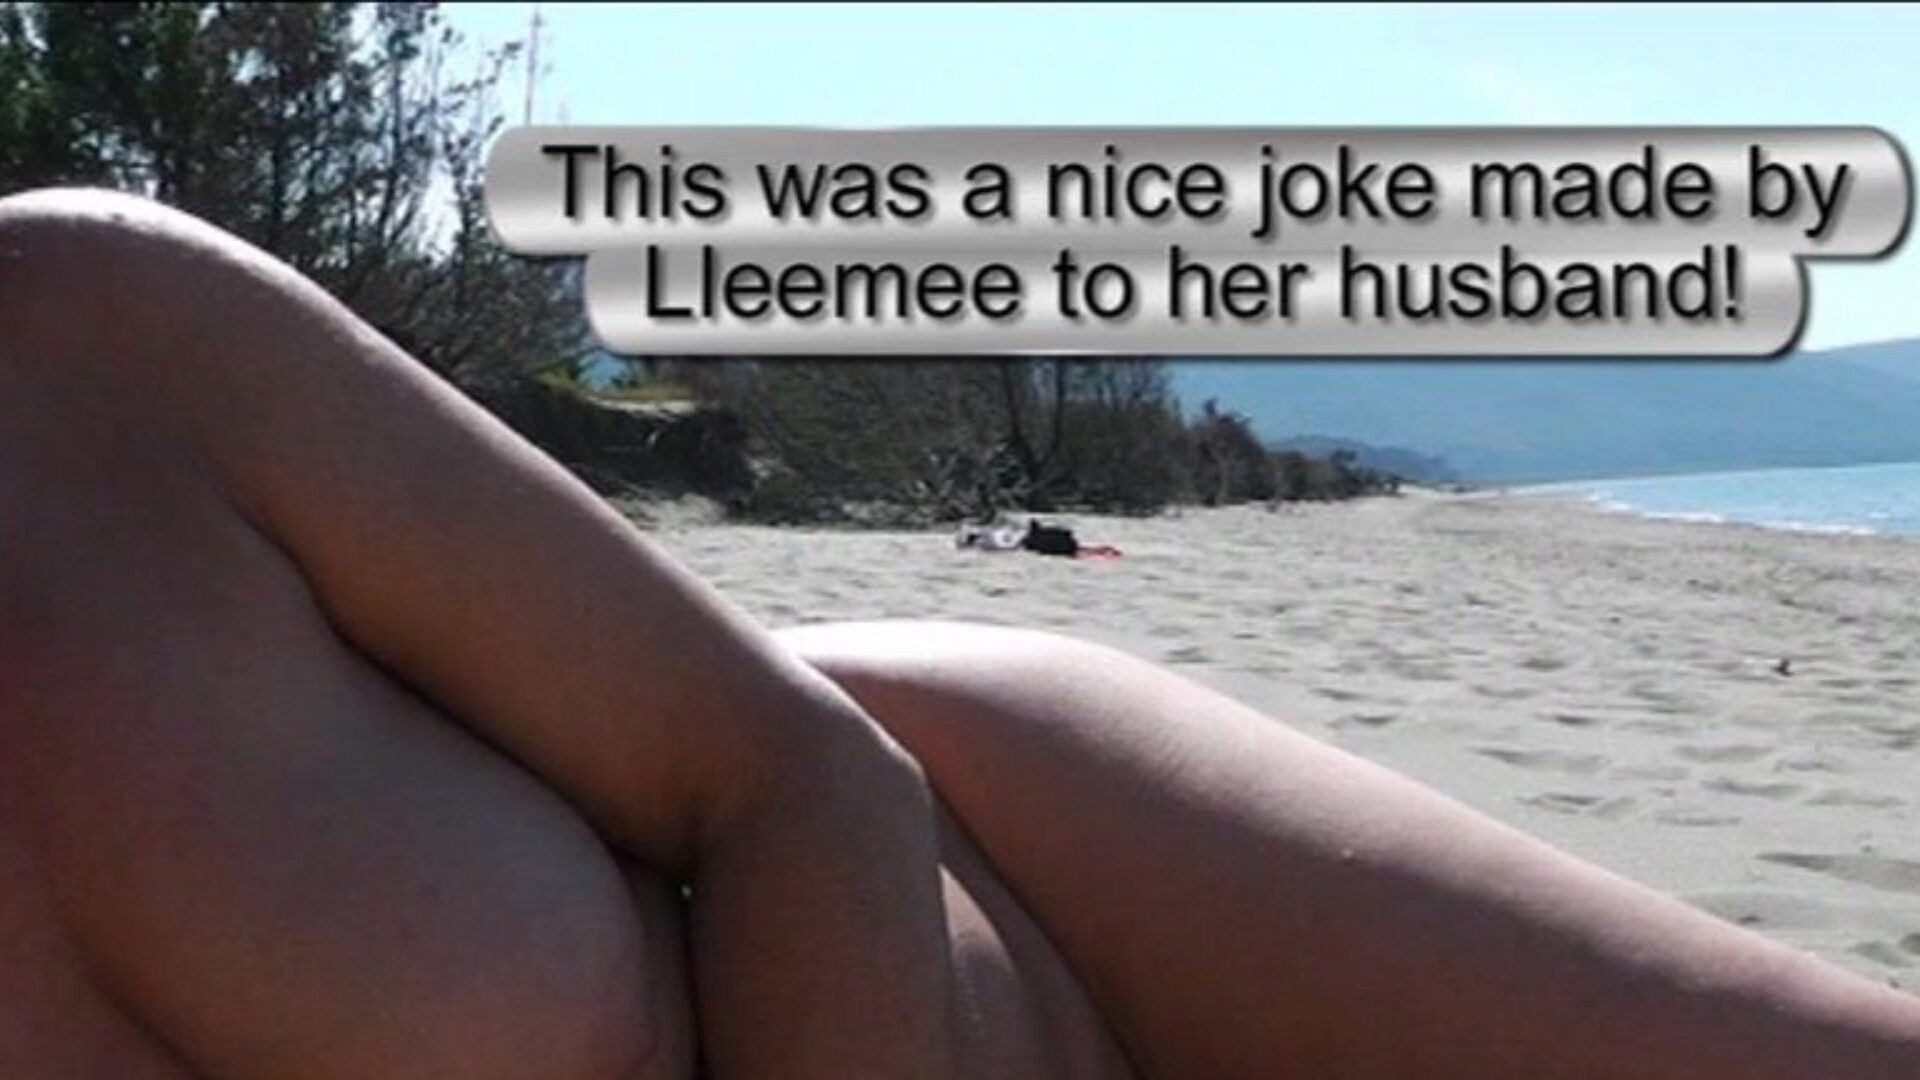 show de playa bajándose - hombre presenciando 2 una broma muy valiosa hecha por lleemee a su cónyuge